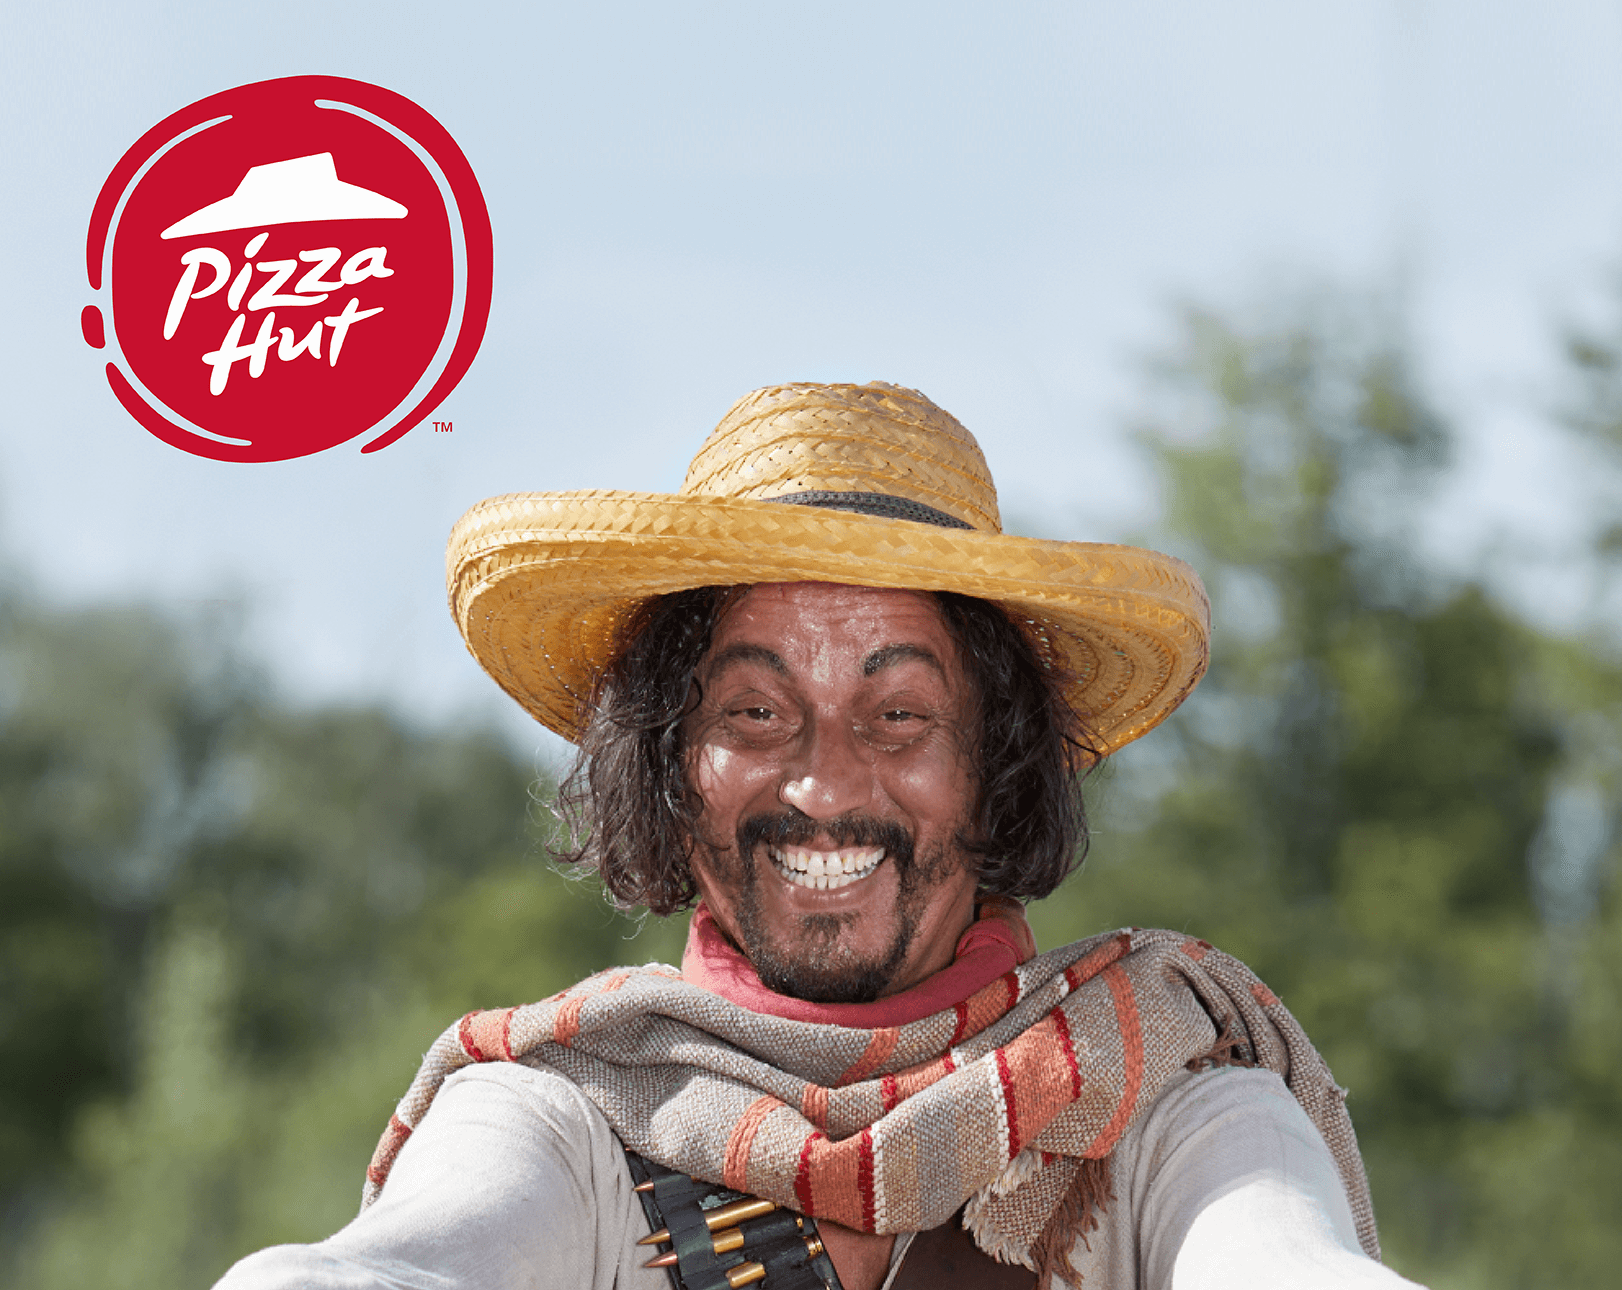 Personnage du spot publicitaire Pizza Hut pour la sortie des nouvelles pizzas mexicaines de l'enseigne,